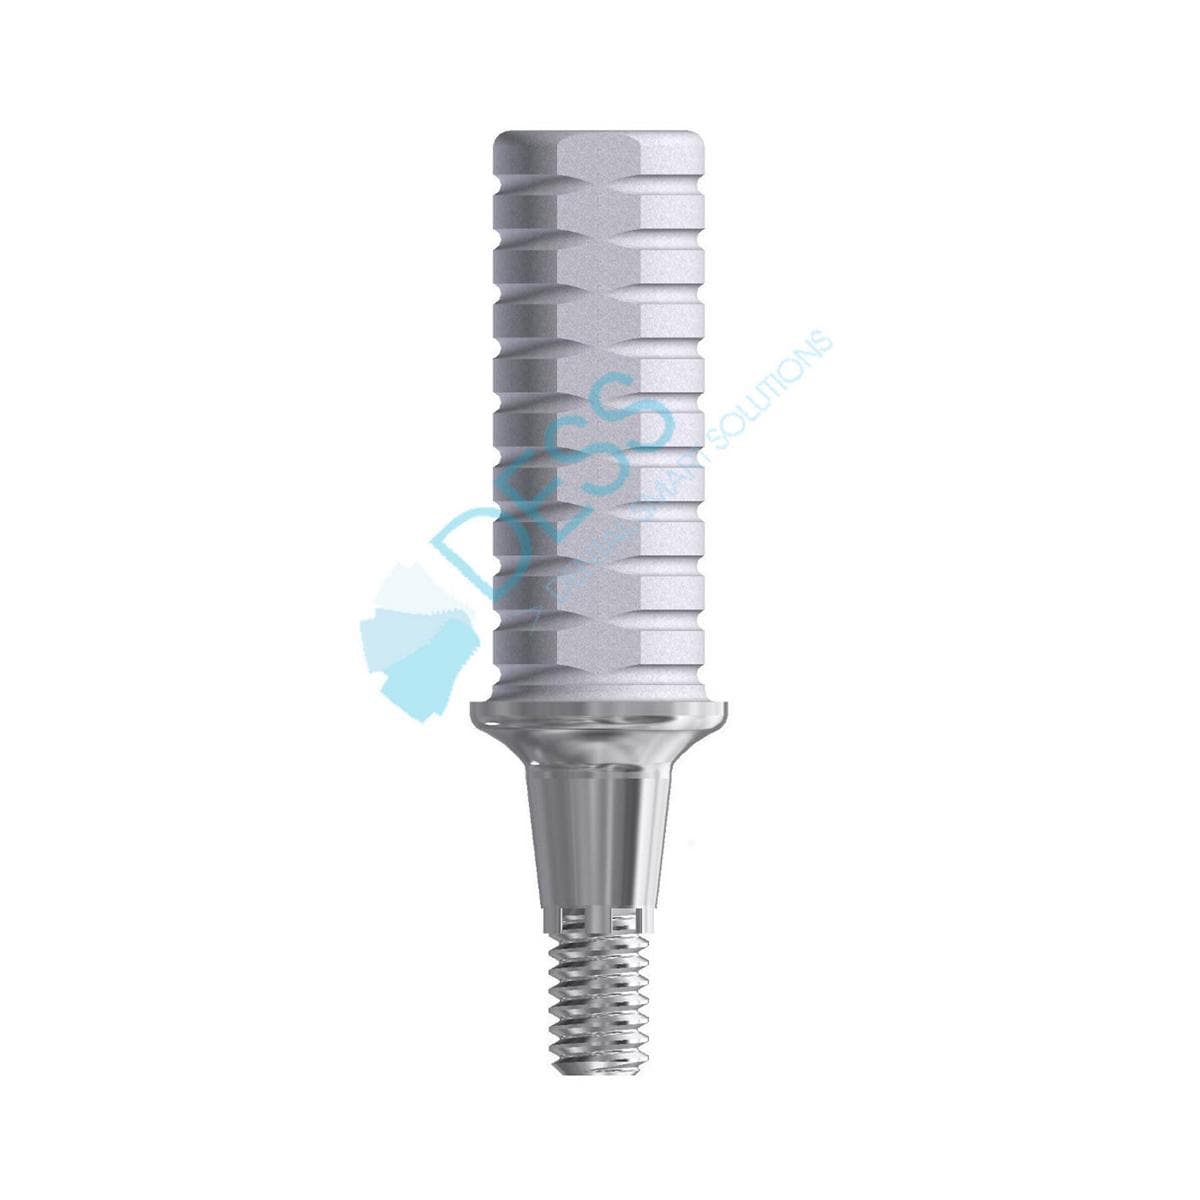 Provisorisches Titanabutment - kompatibel mit Dentsply Ankylos® - Höhe 1,5 mm, mit Rotationsschutz